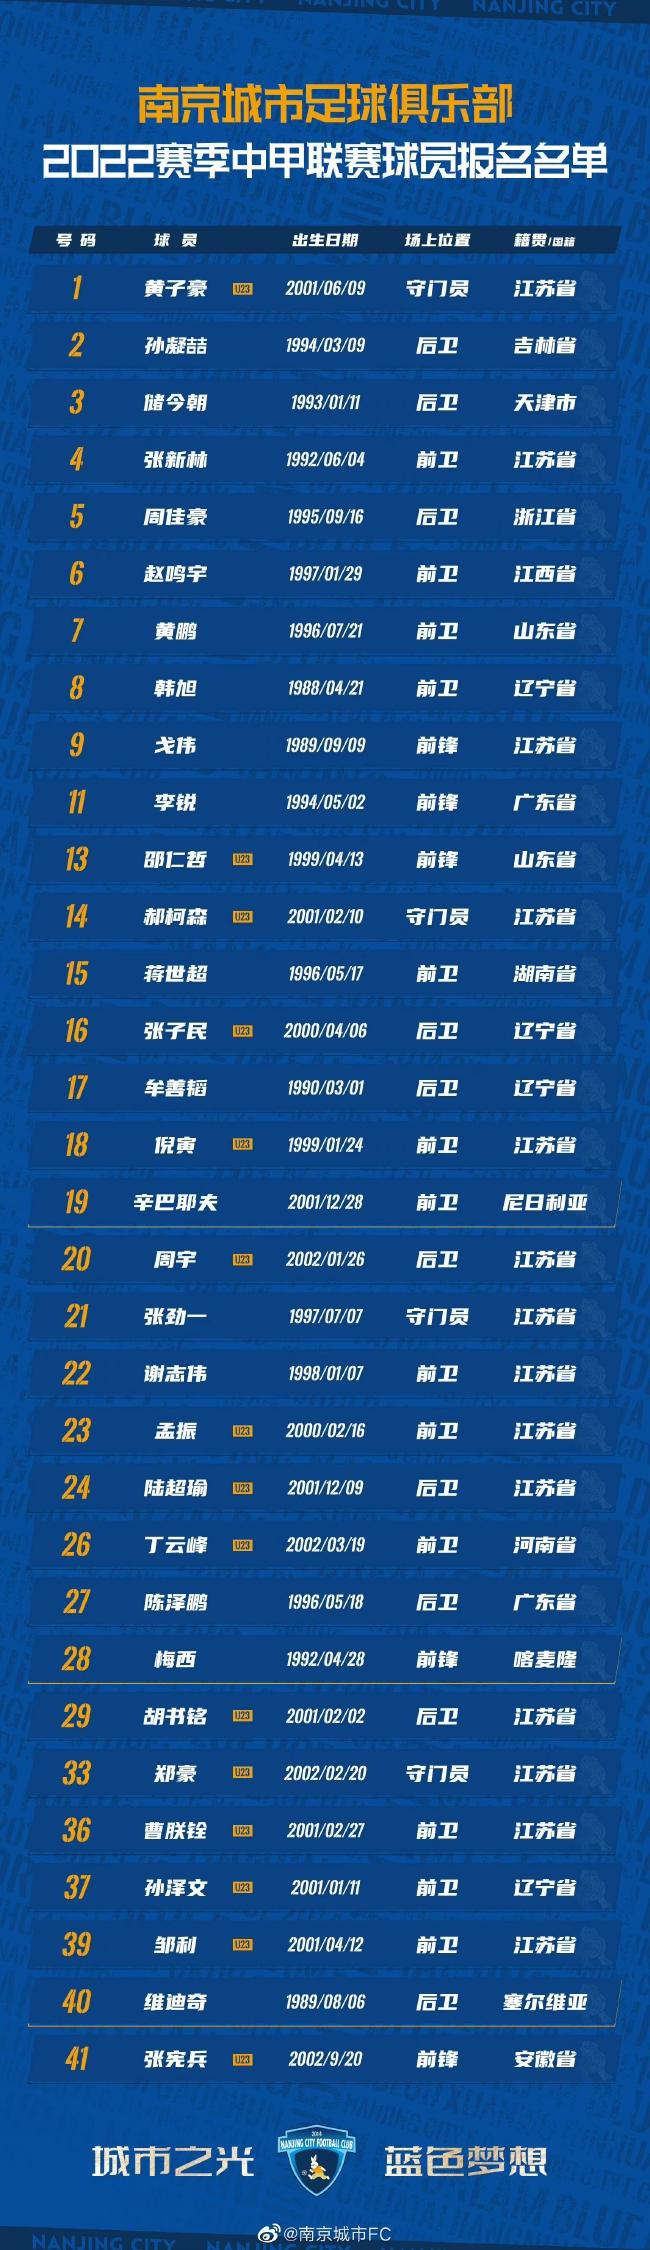 南京城市公布新赛季大名单 10号空缺梅西号码不变